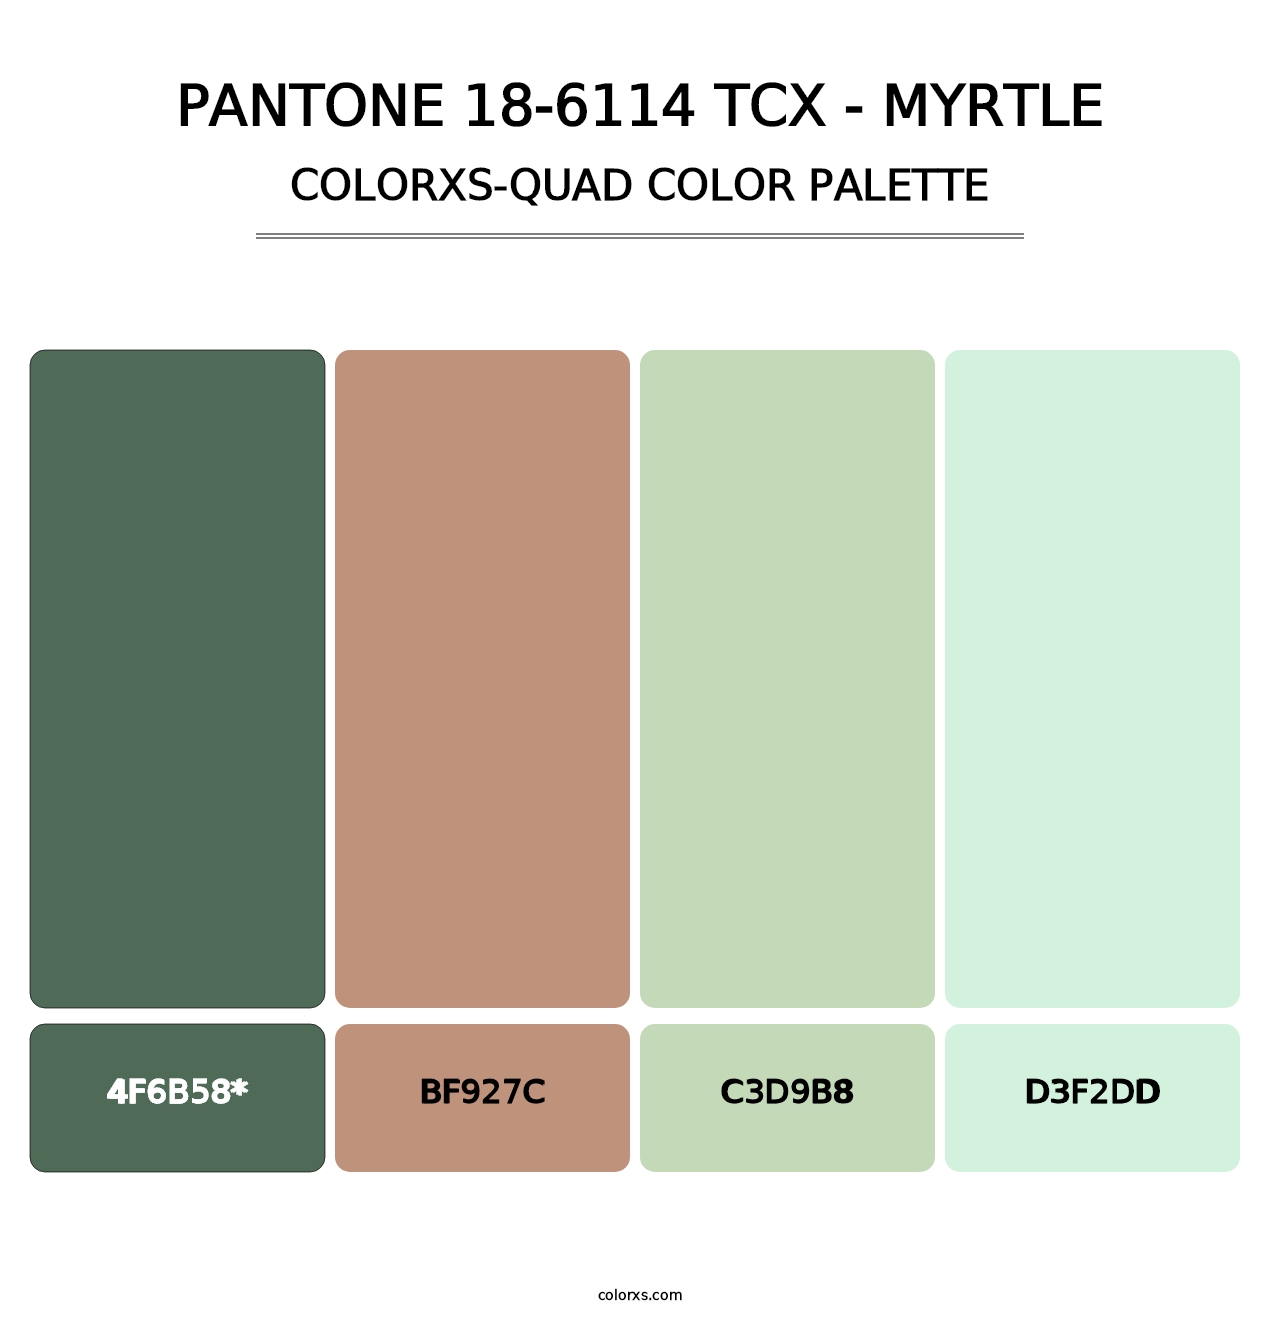 PANTONE 18-6114 TCX - Myrtle - Colorxs Quad Palette